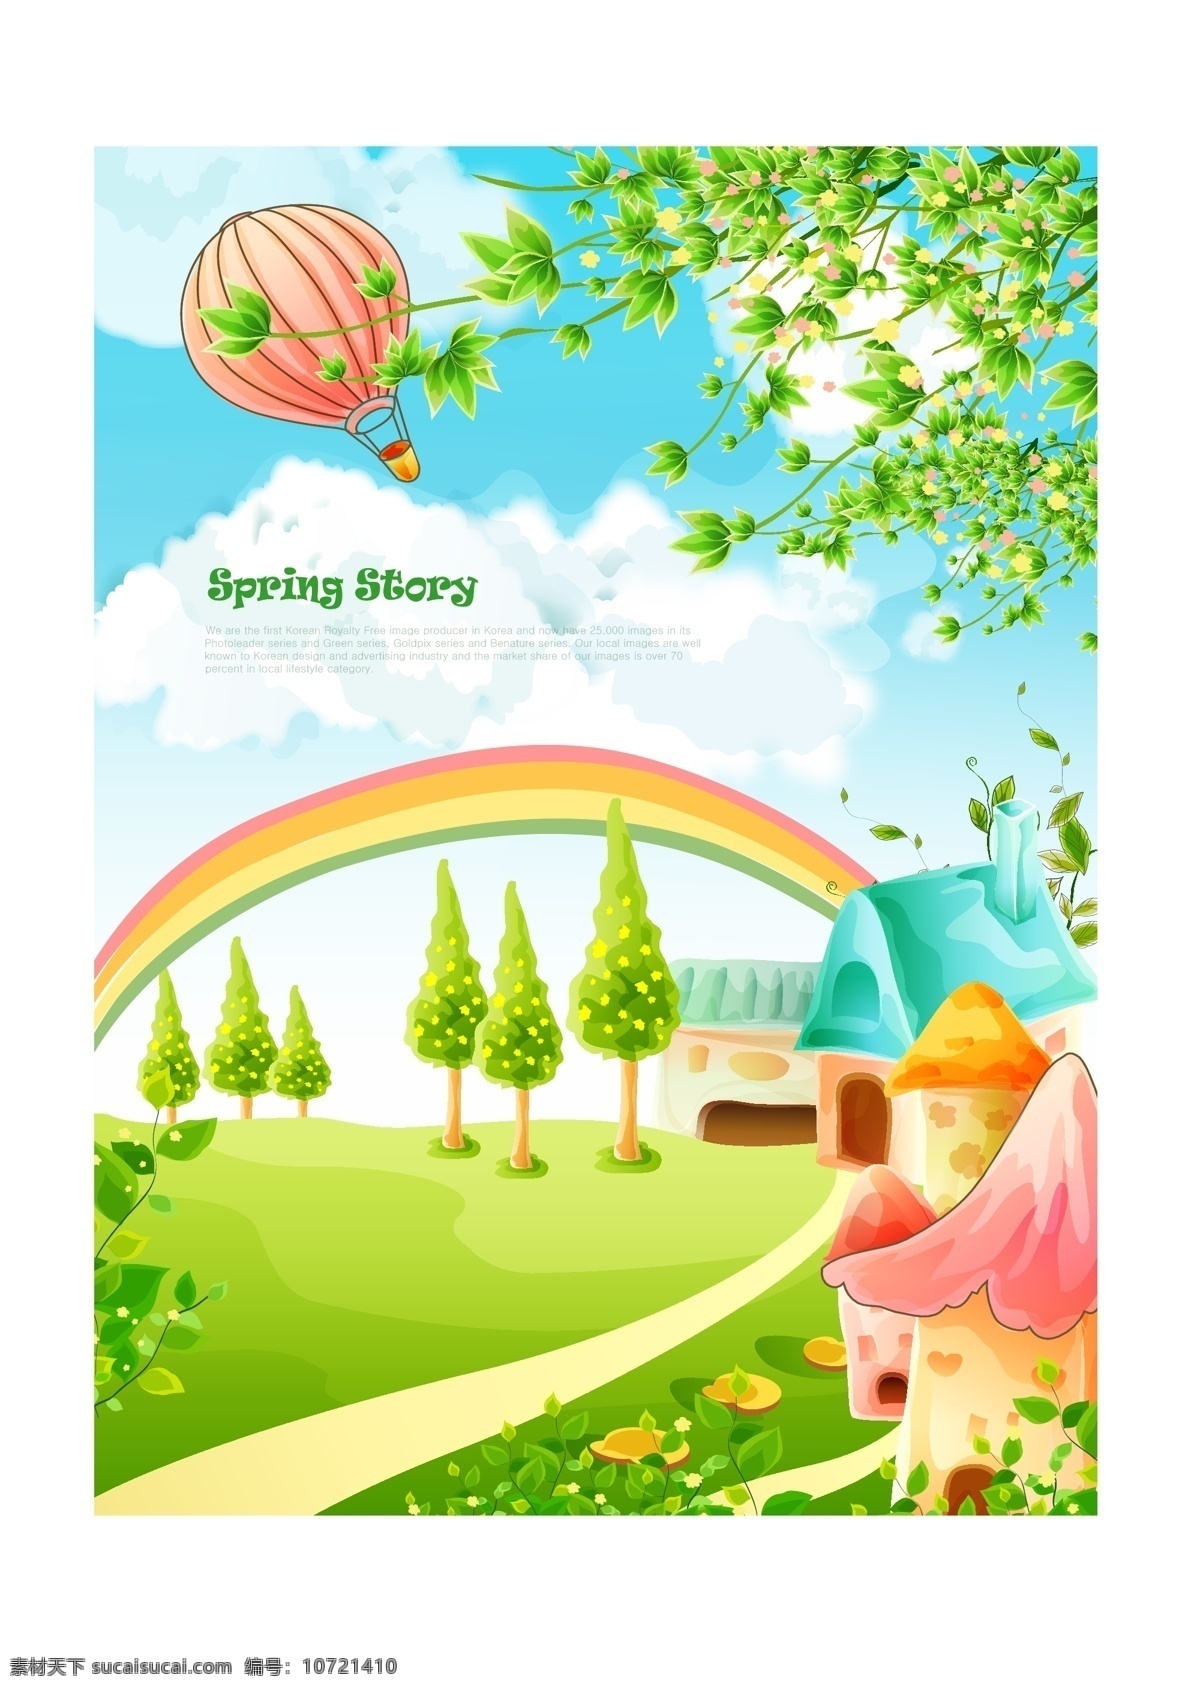 韩国 风格 儿童 海报 淘宝模板下载 淘宝设计 淘宝素材 原创设计 原创淘宝设计